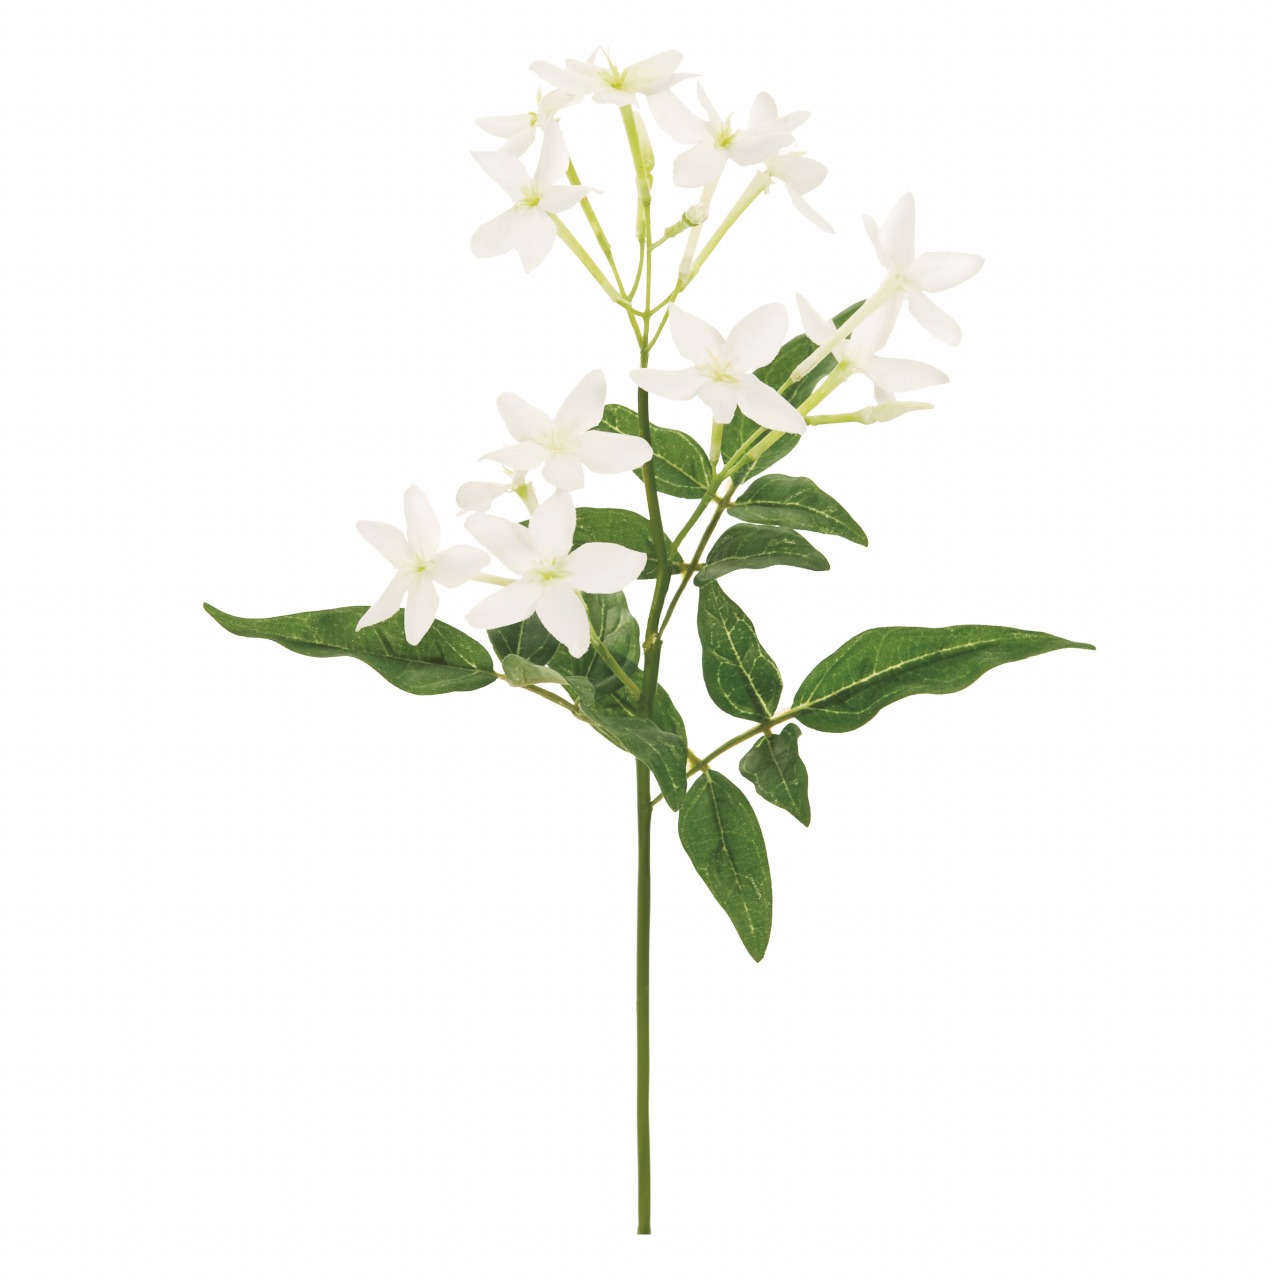 マイフラ 通販 Magiq レイナジャスミン ホワイト アーティフィシャルフラワー 造花 Fm 茉莉花 花径 約4 全長 約29cm ホワイト Magiq アーティフィシャルフラワー 造花 全国にmagiq 花器 花資材などをお届けします